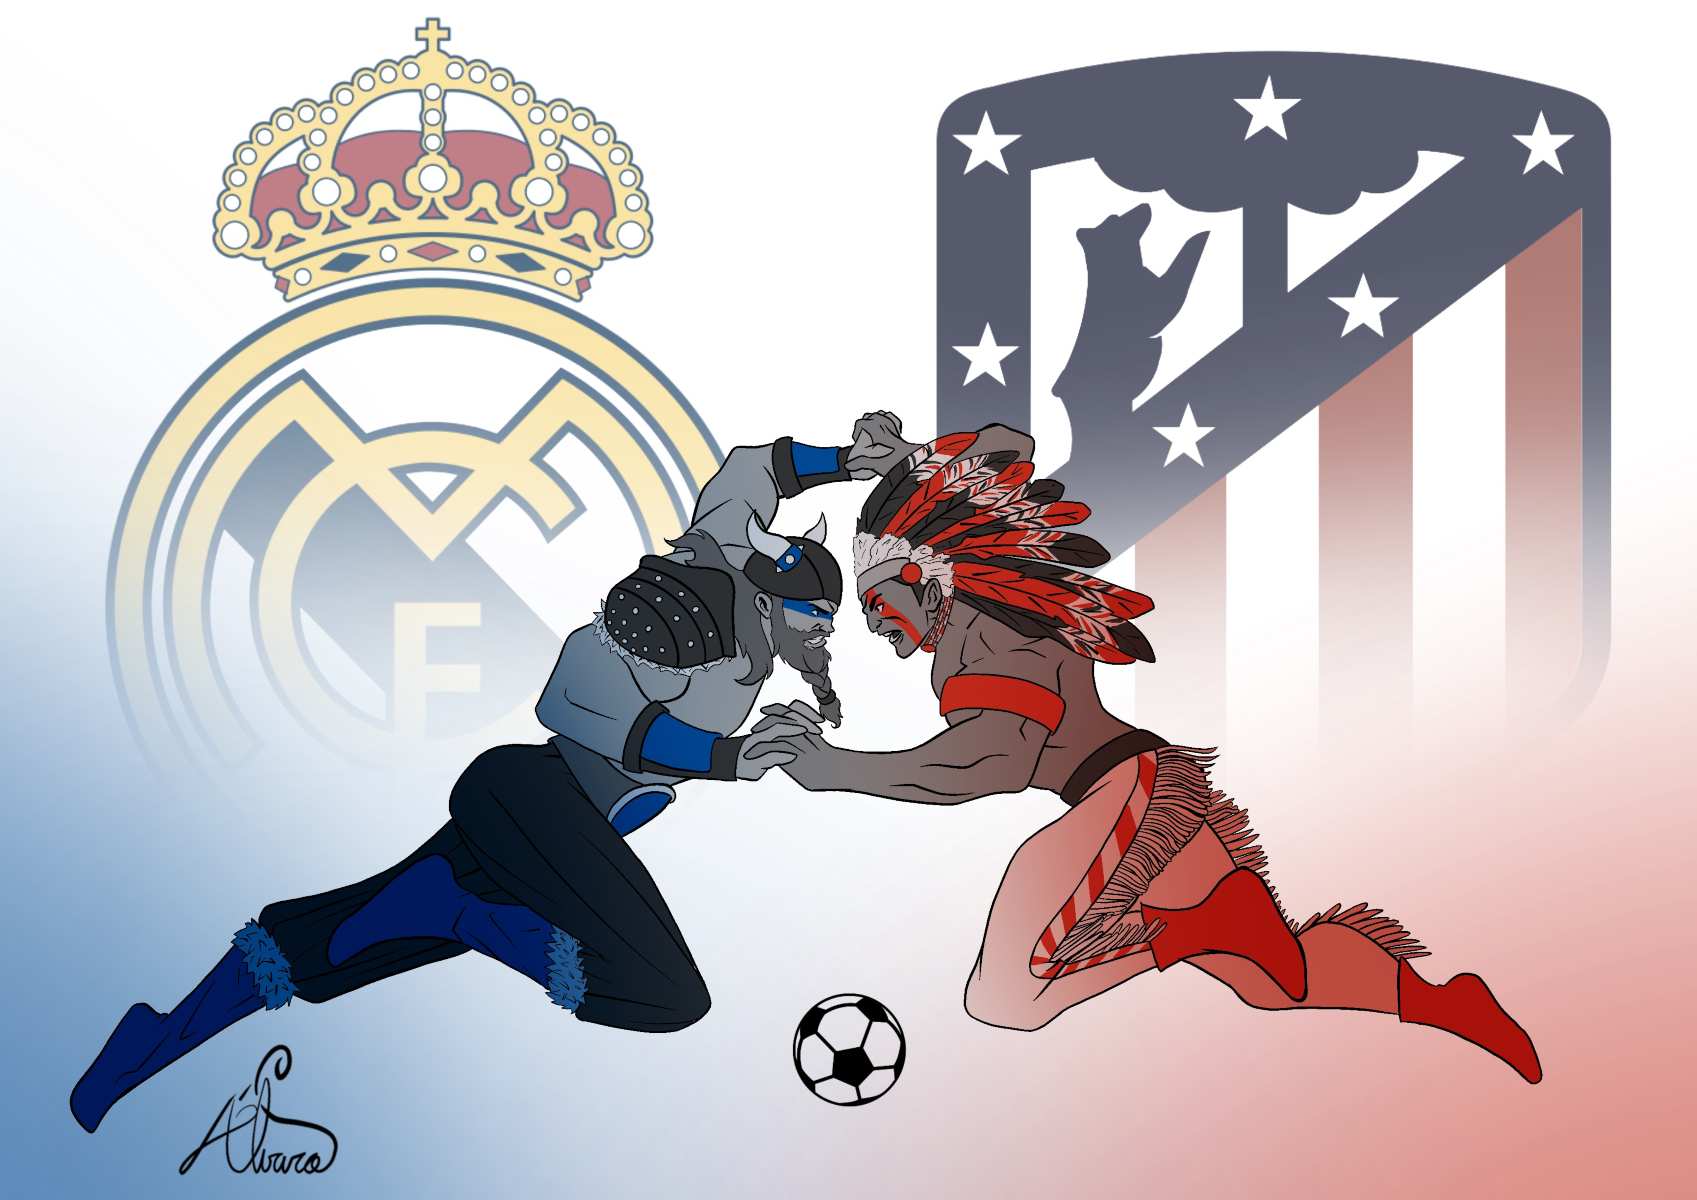 Atleti y Real Madrid se juegan la liga. Y lo lógico es que ganen los primeros. Ilustración: Álvaro Martínez.